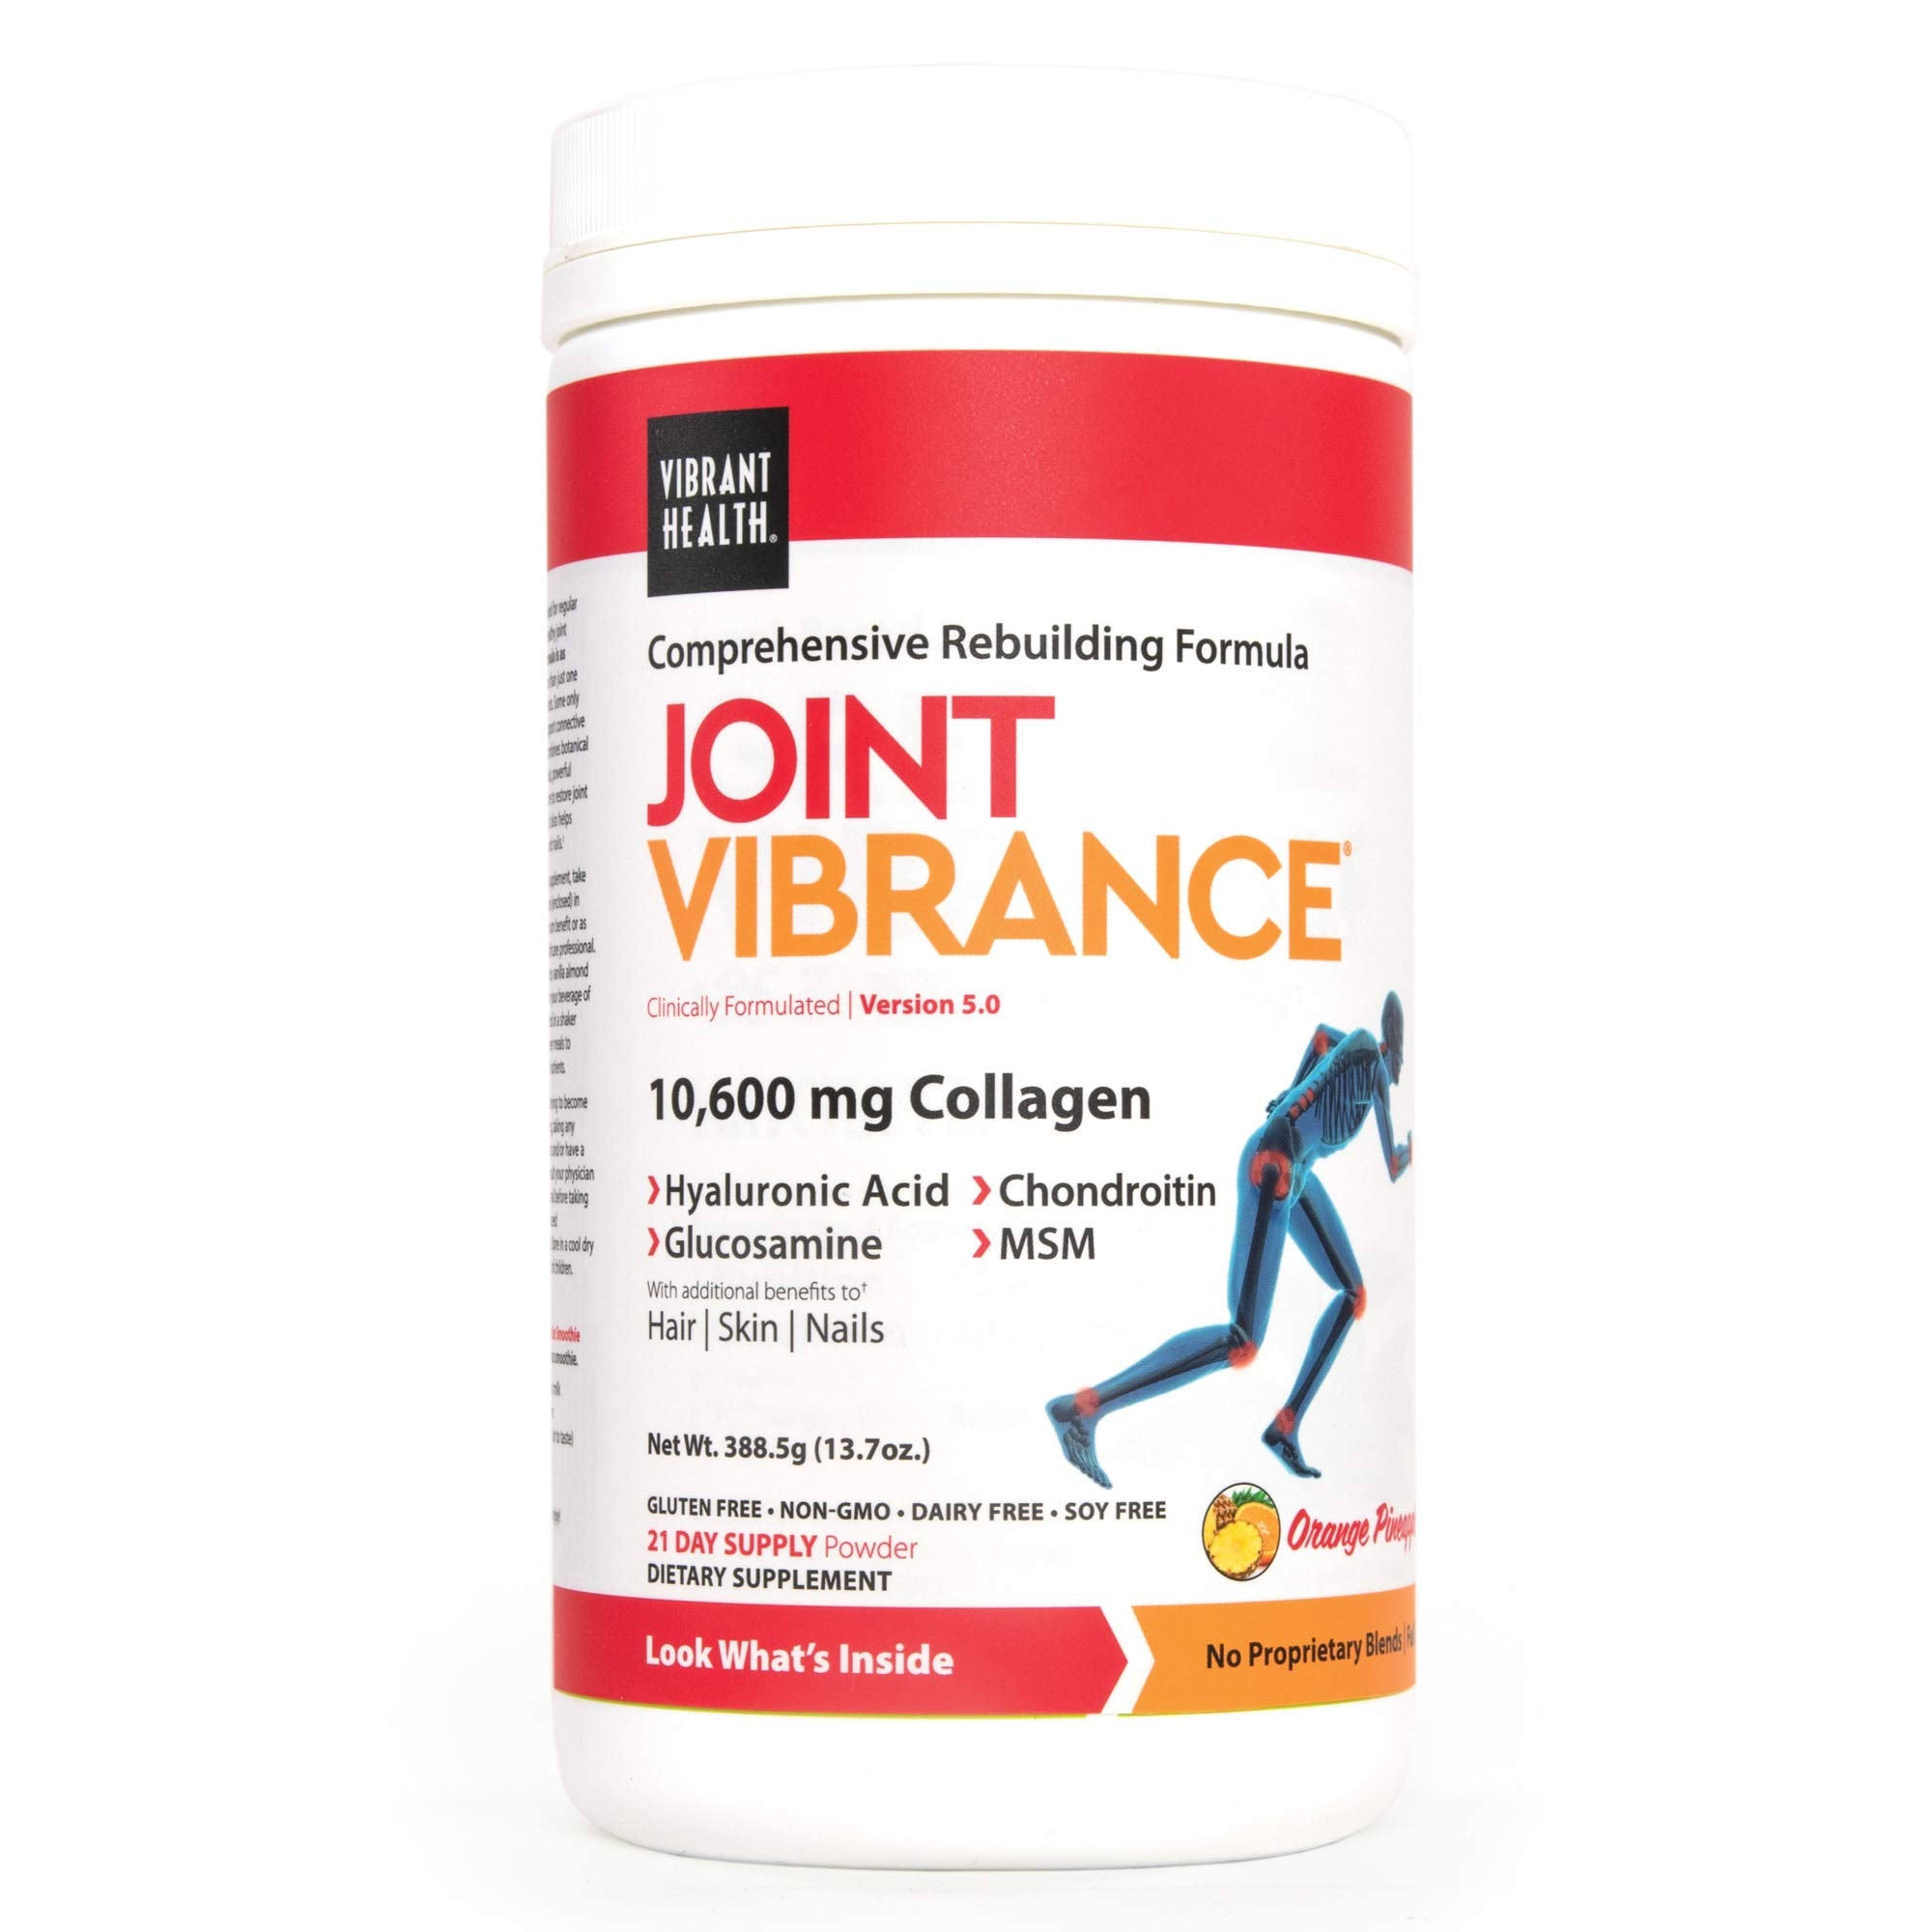 Vibrant Health Joint Vibrance Powder 13.1 oz